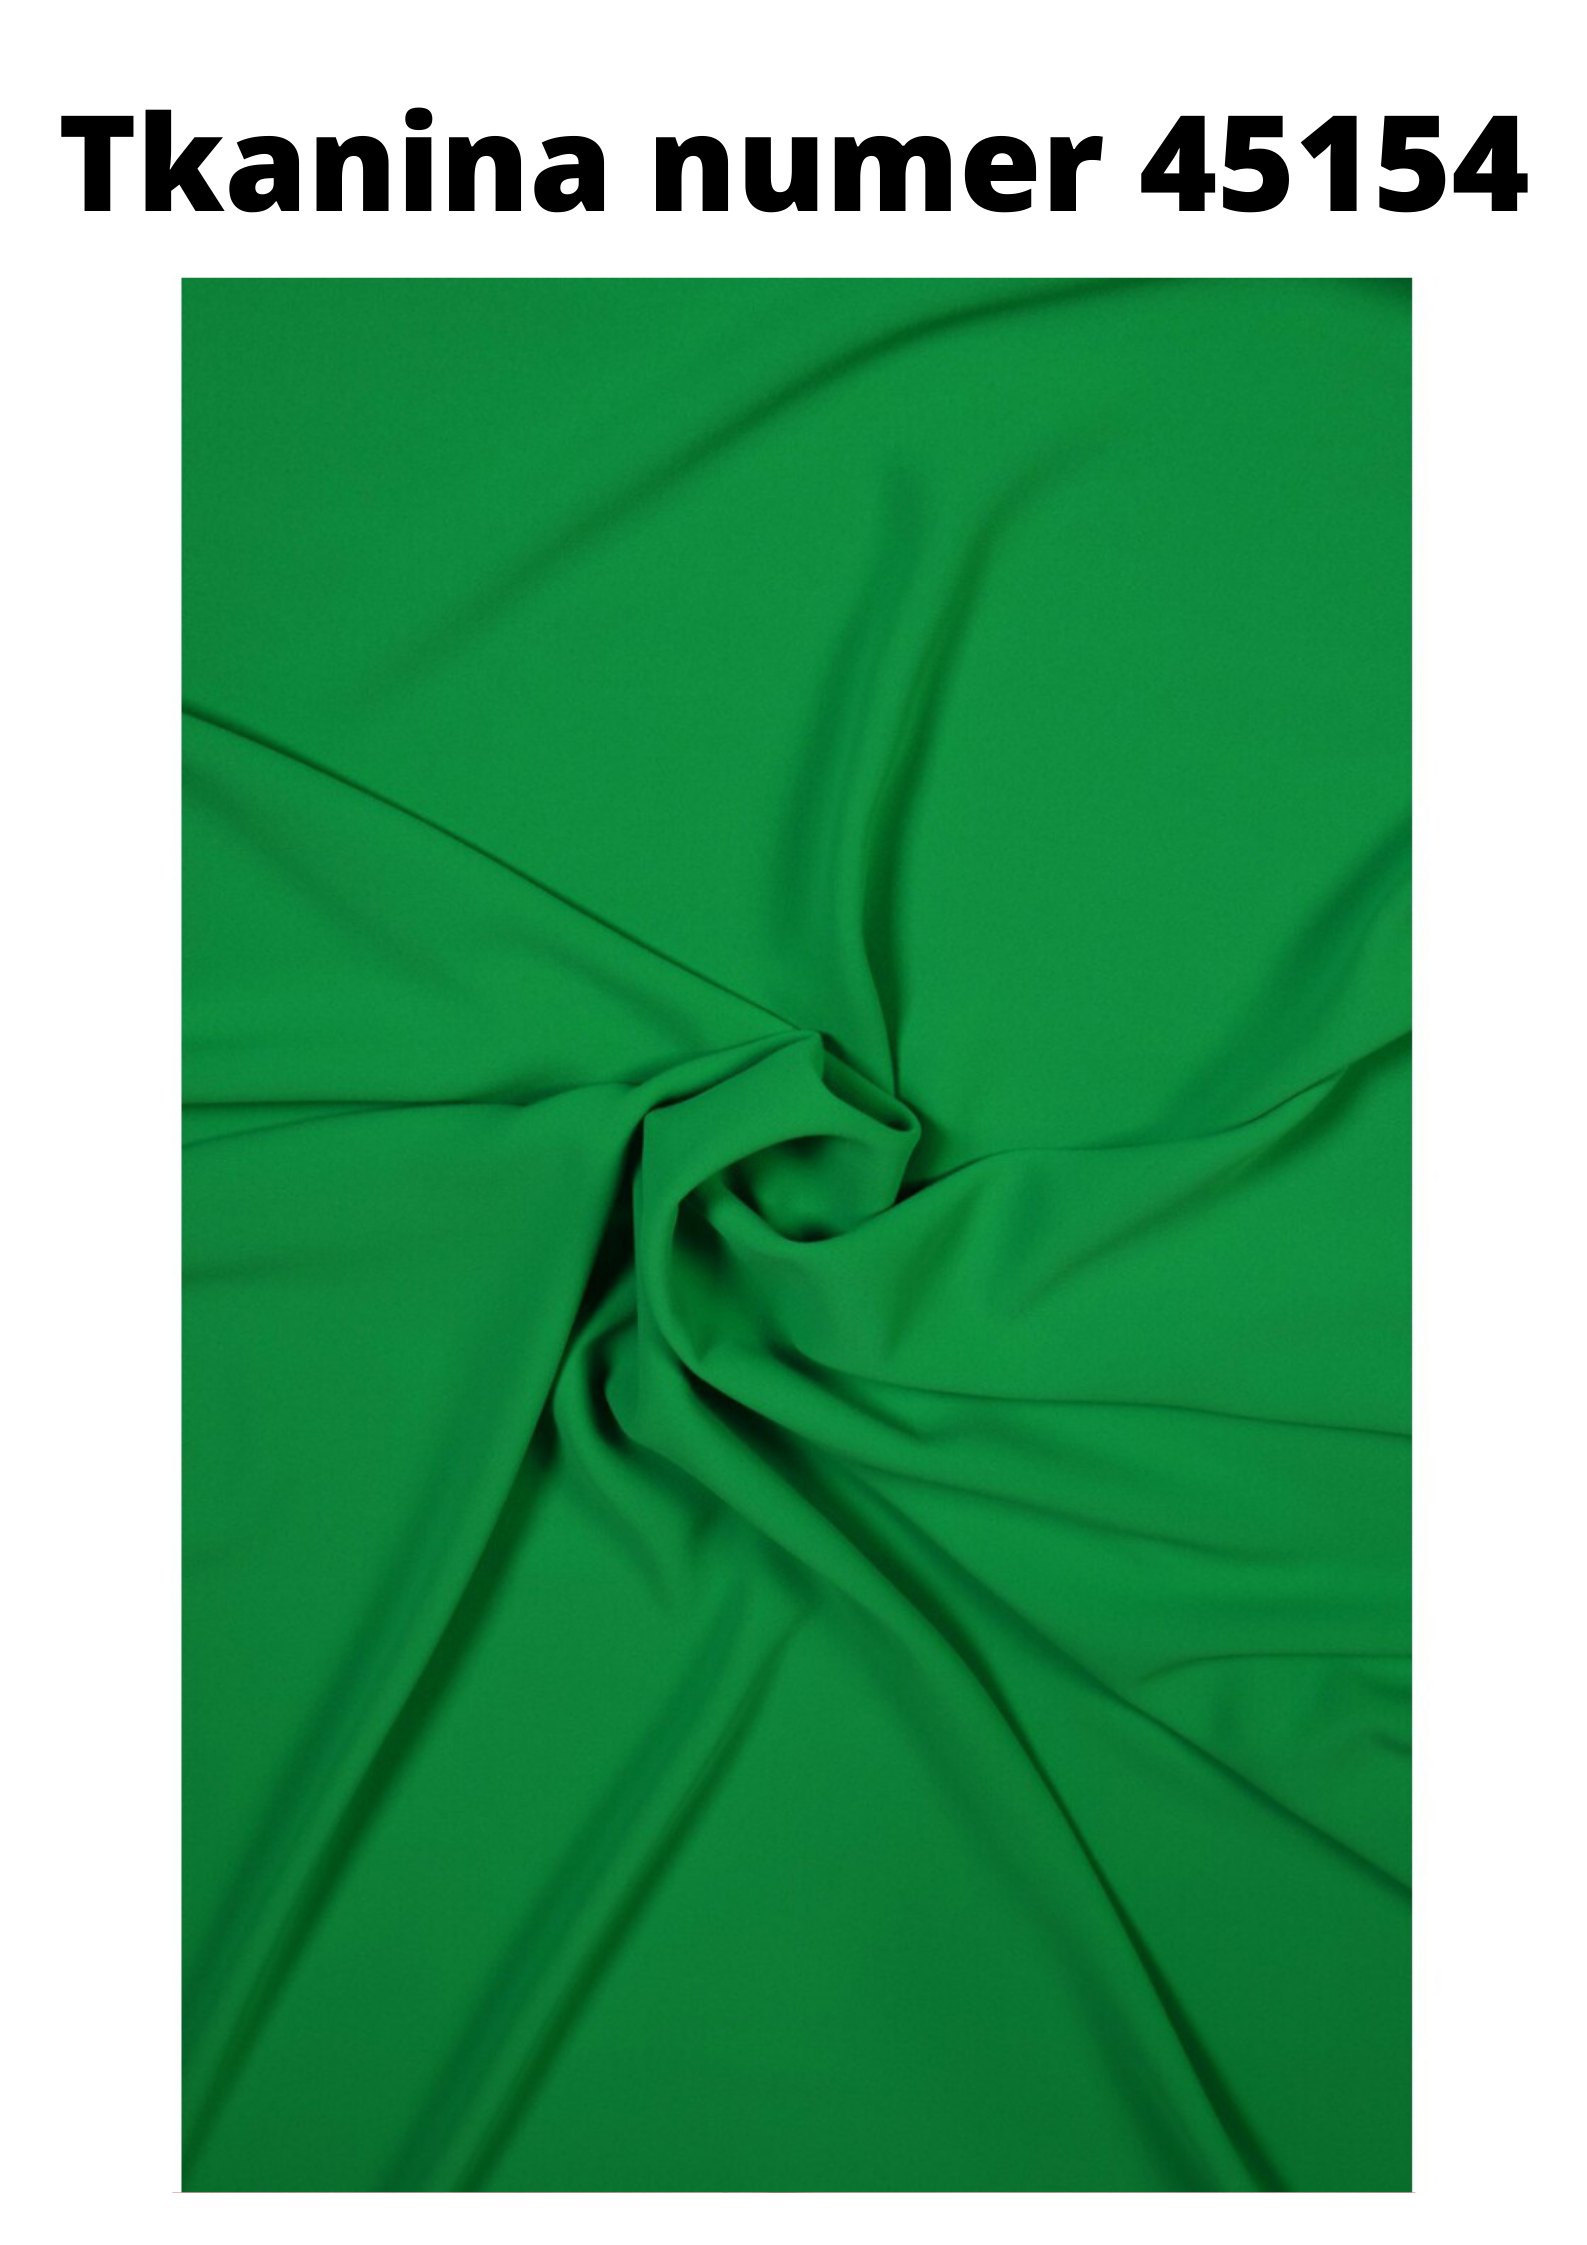 tkanina cadi w kolorze zielonym